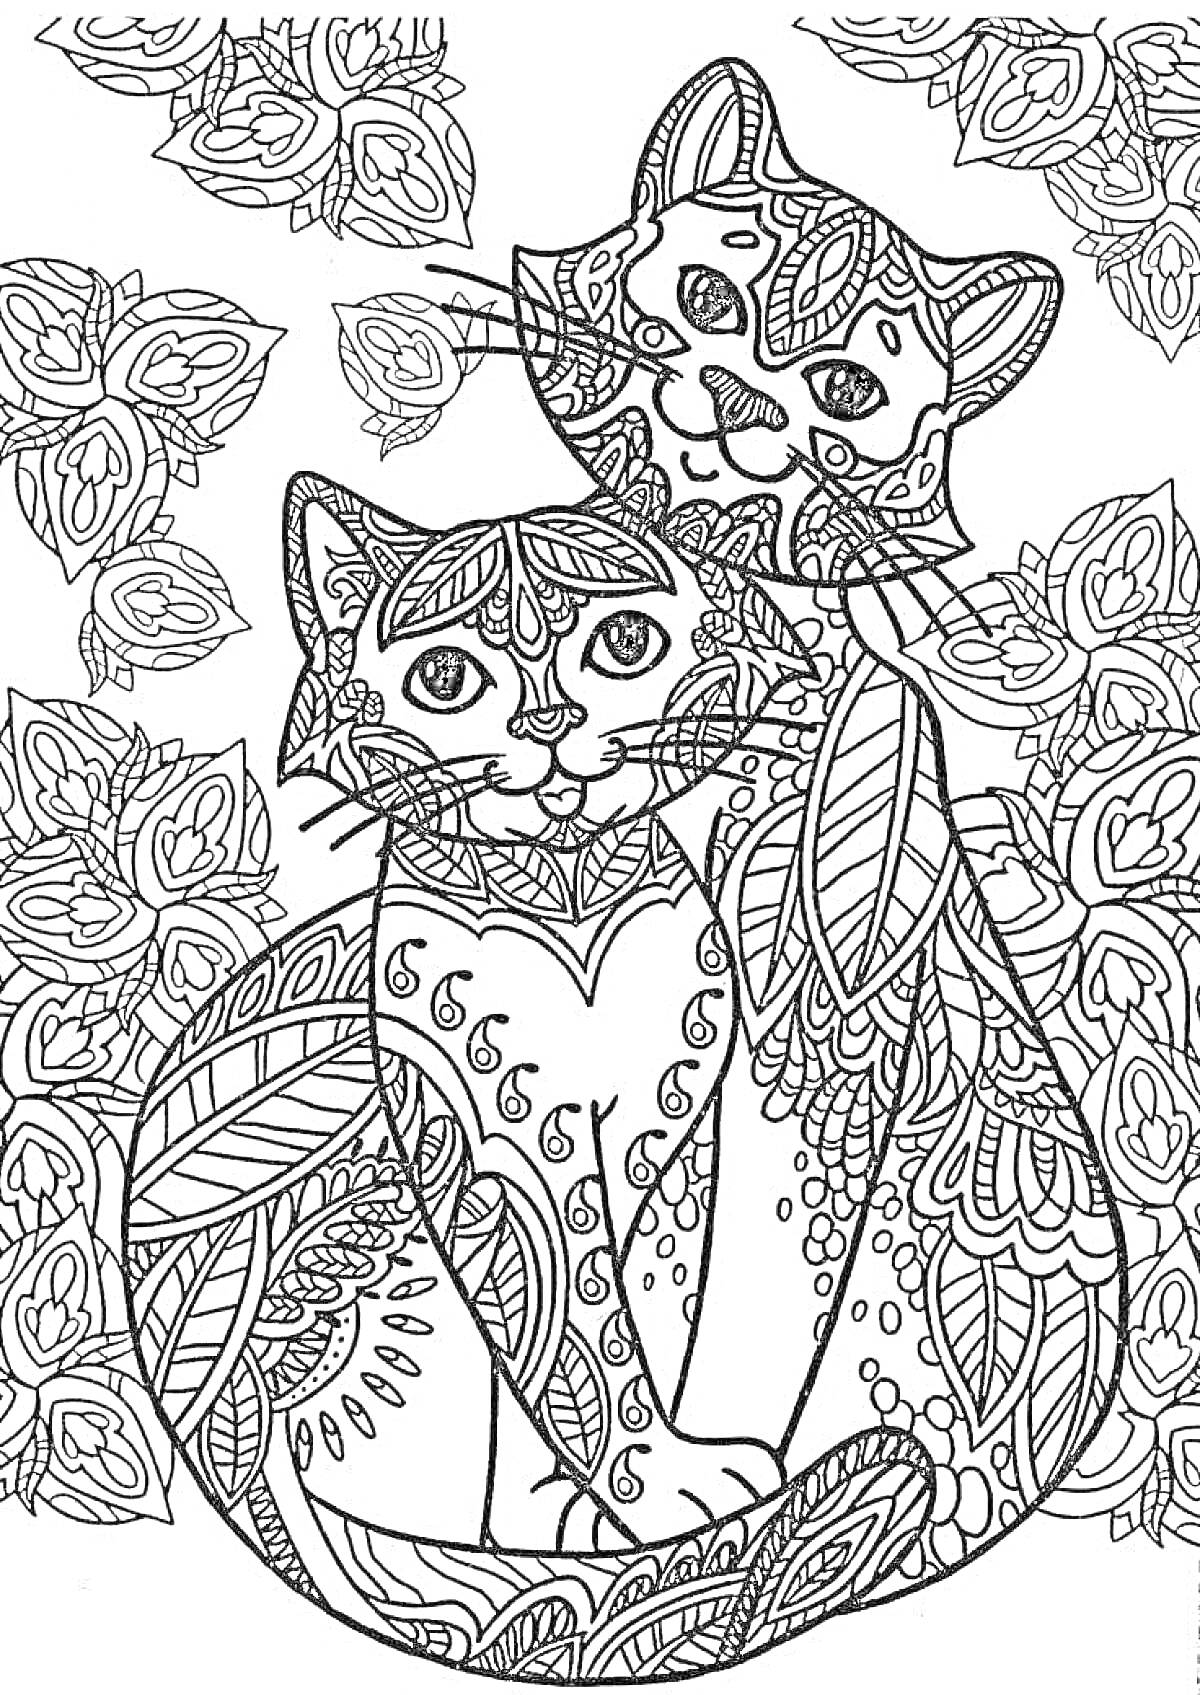 Раскраска антистресс раскраска с двумя котятами и цветами, узоры, ломаные линии, цветочные элементы